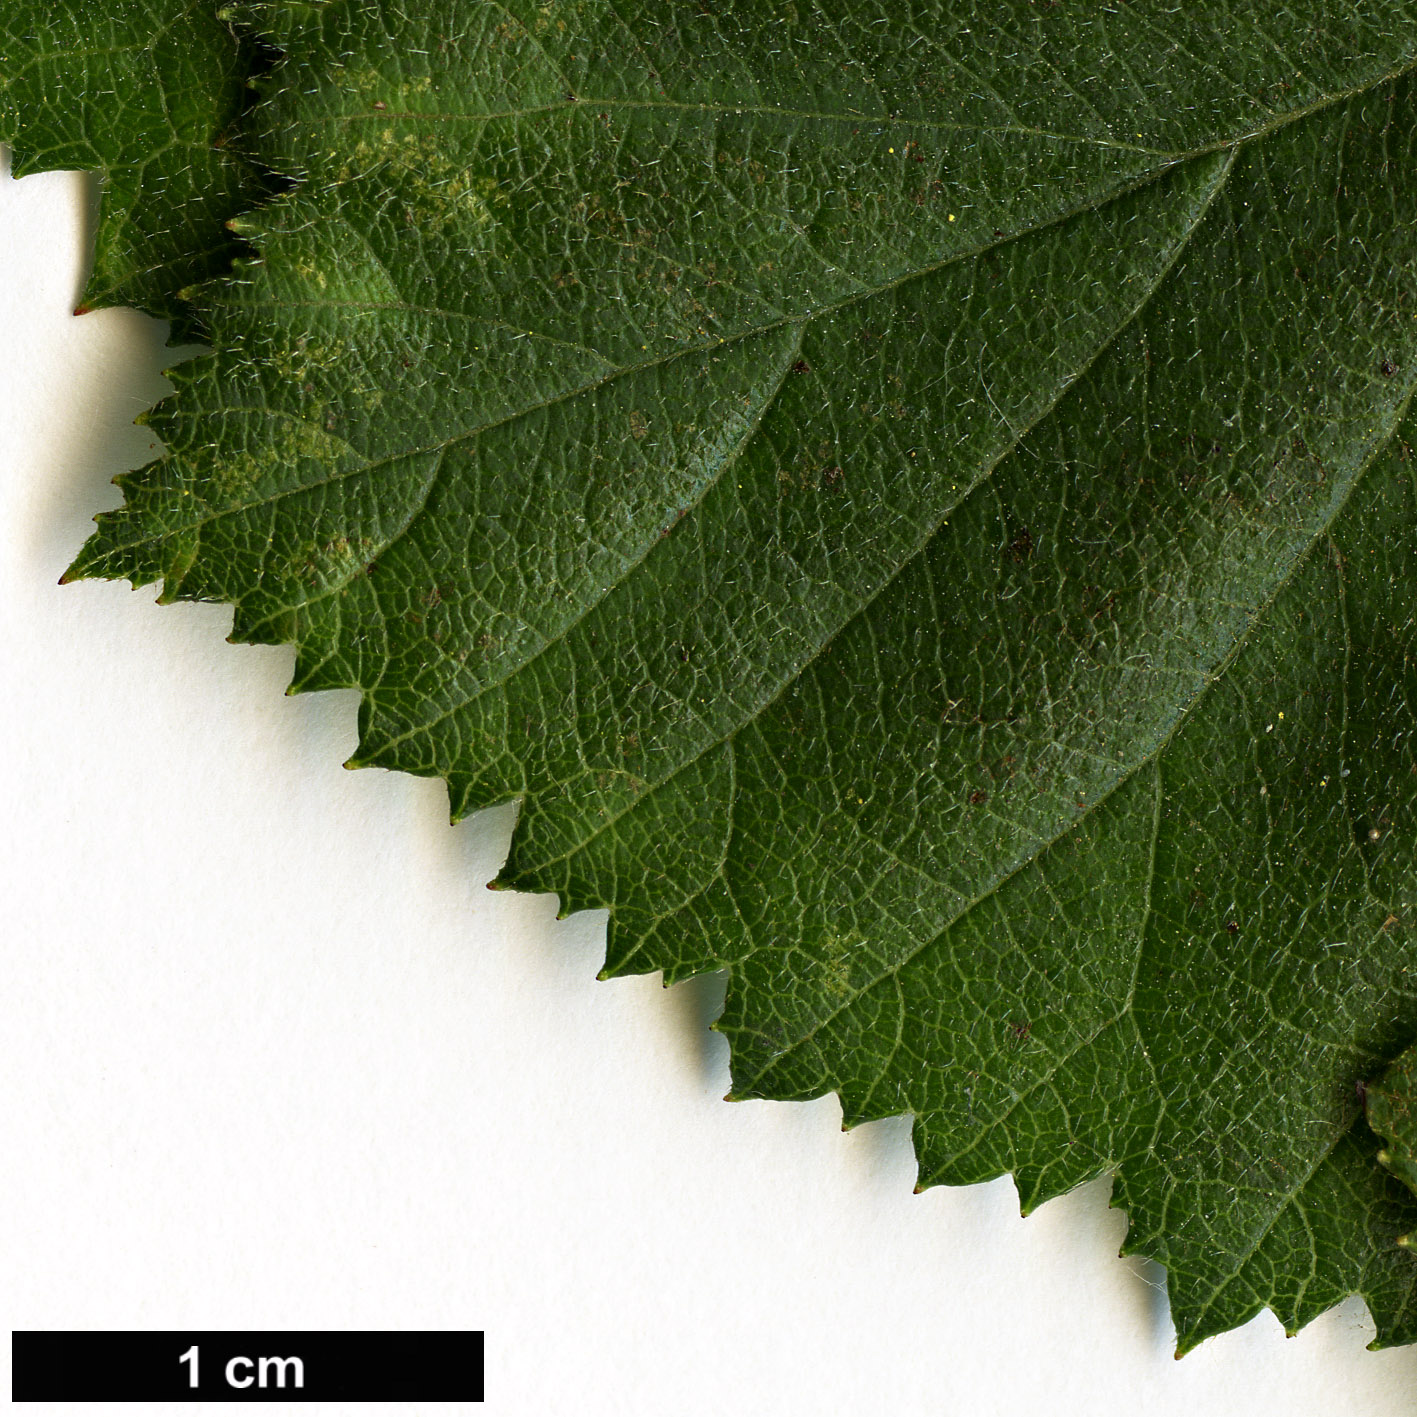 High resolution image: Family: Rosaceae - Genus: Crataegus - Taxon: ×dispessa